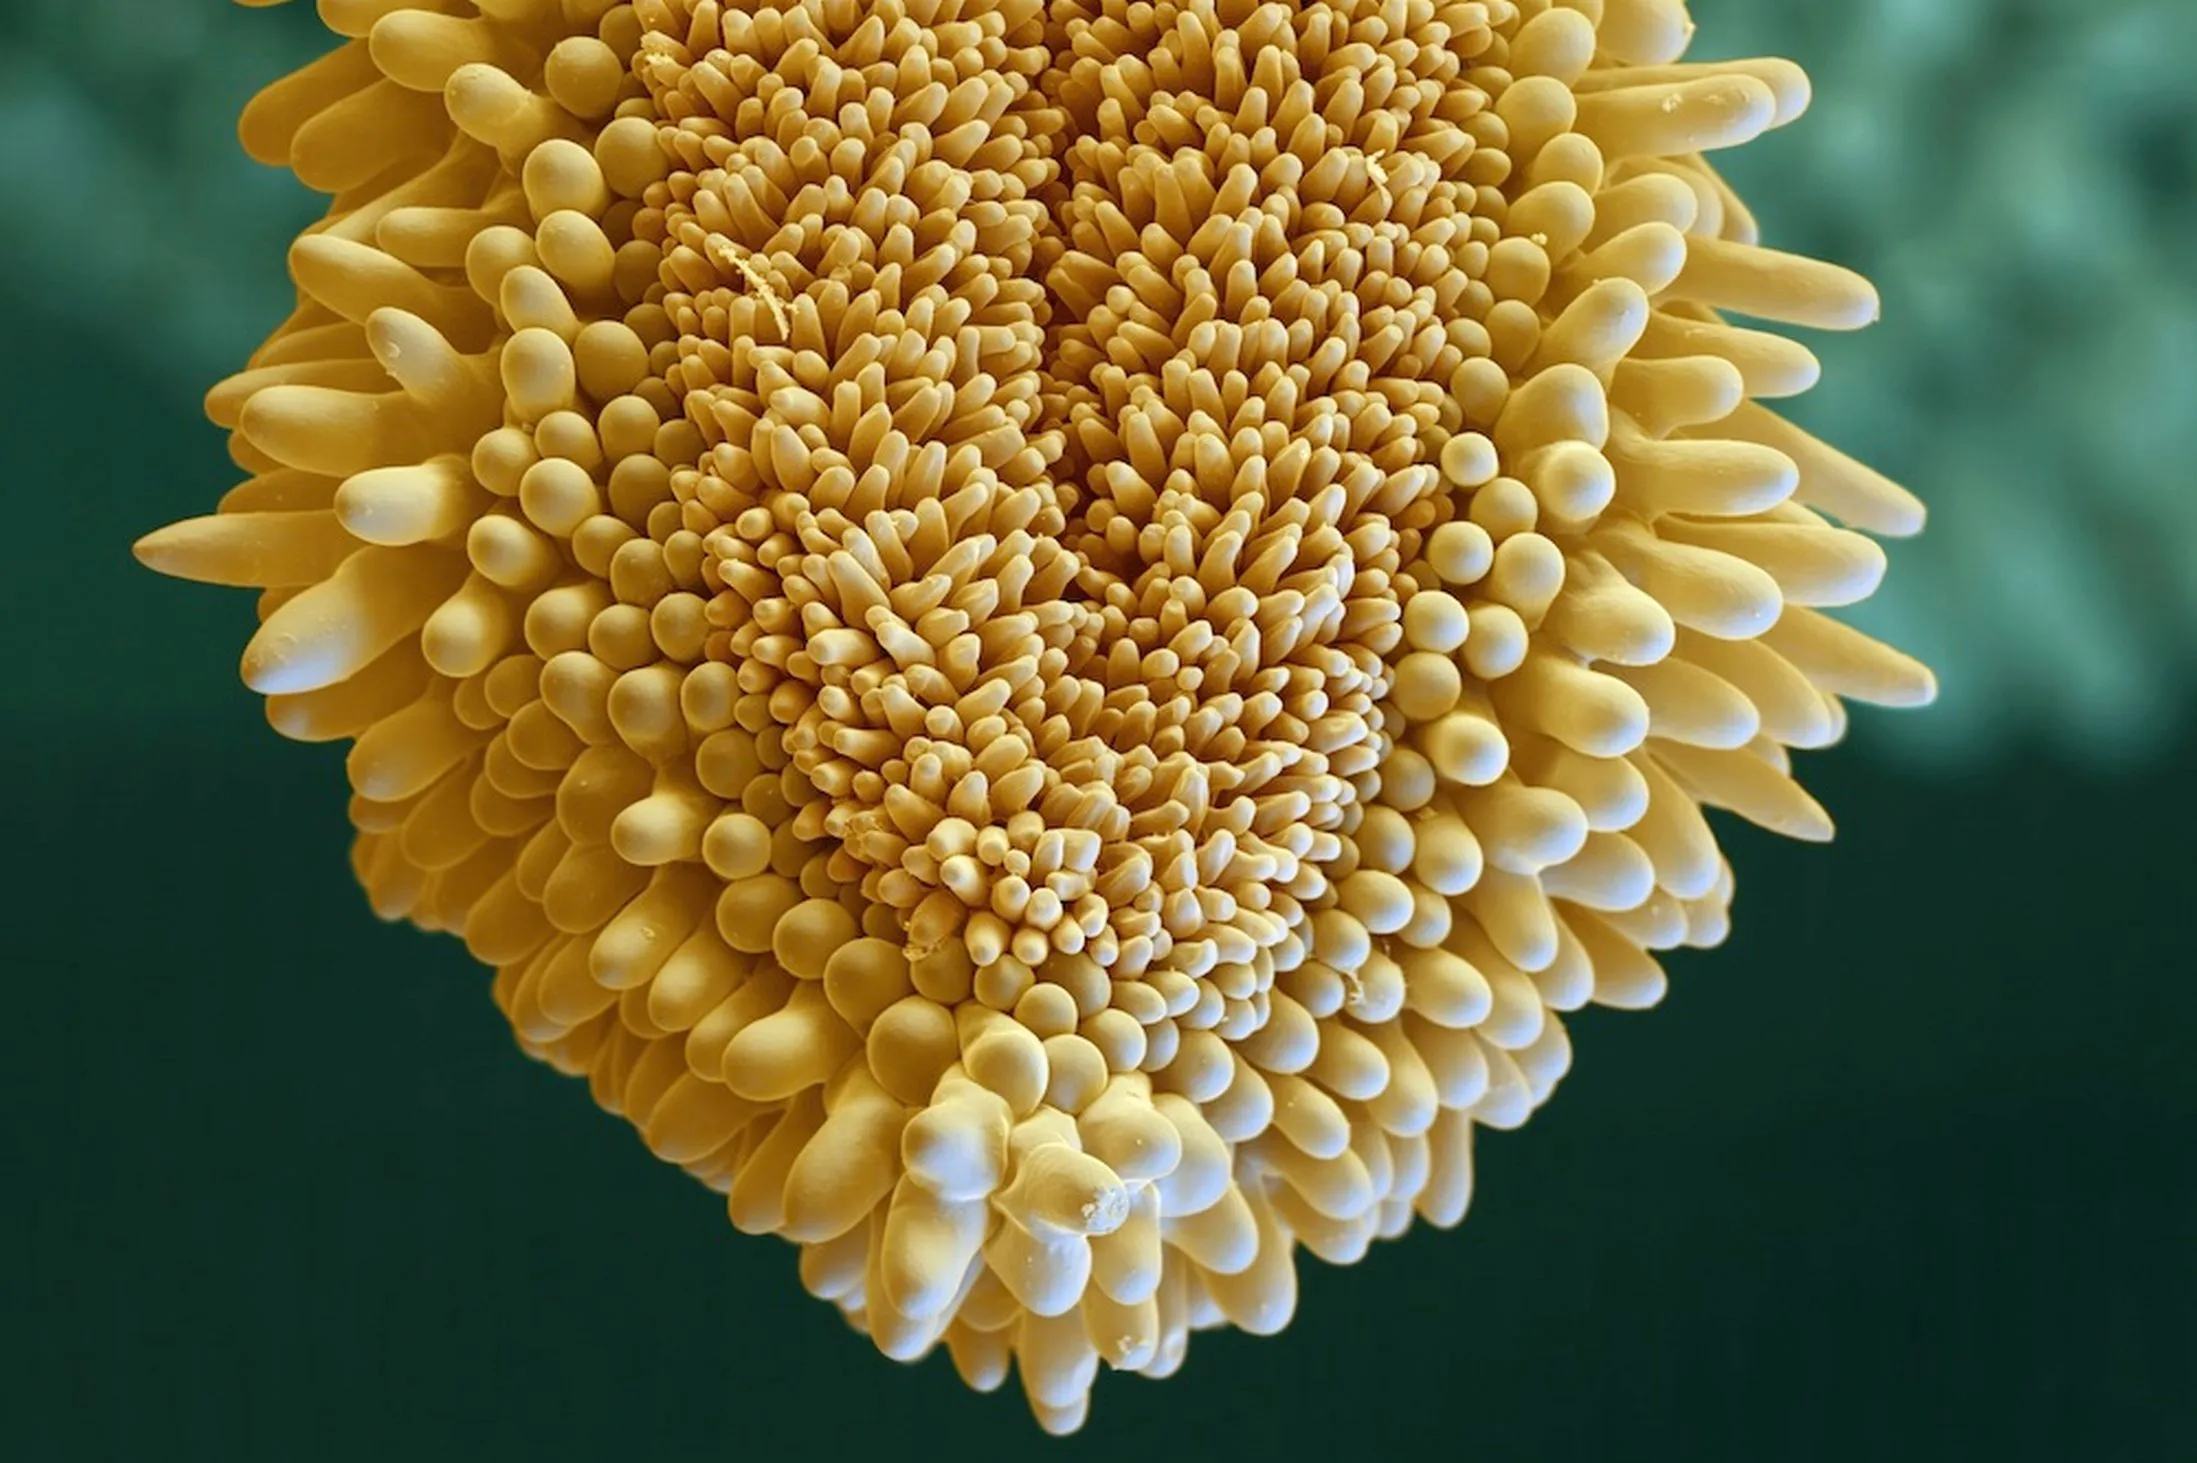 Как выглядит пыльца. Пыльца микрофотографии. Пыльца цветковых растений под микроскопом. Пыльца цветка под микроскопом. Рыльце пестика микрофотография.